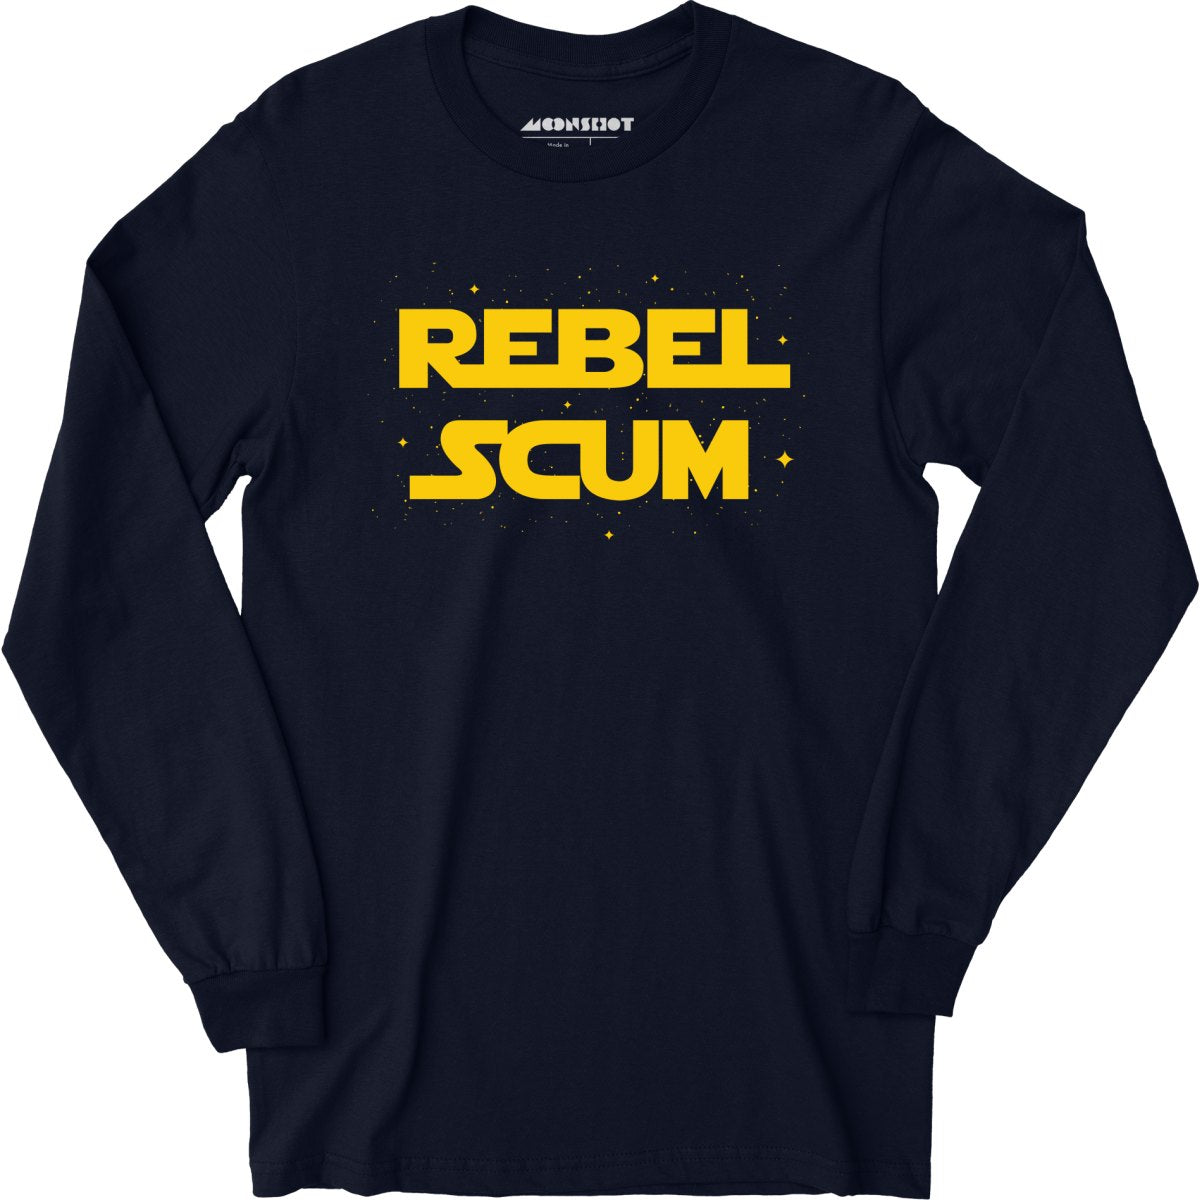 Rebel Scum - Long Sleeve T-Shirt